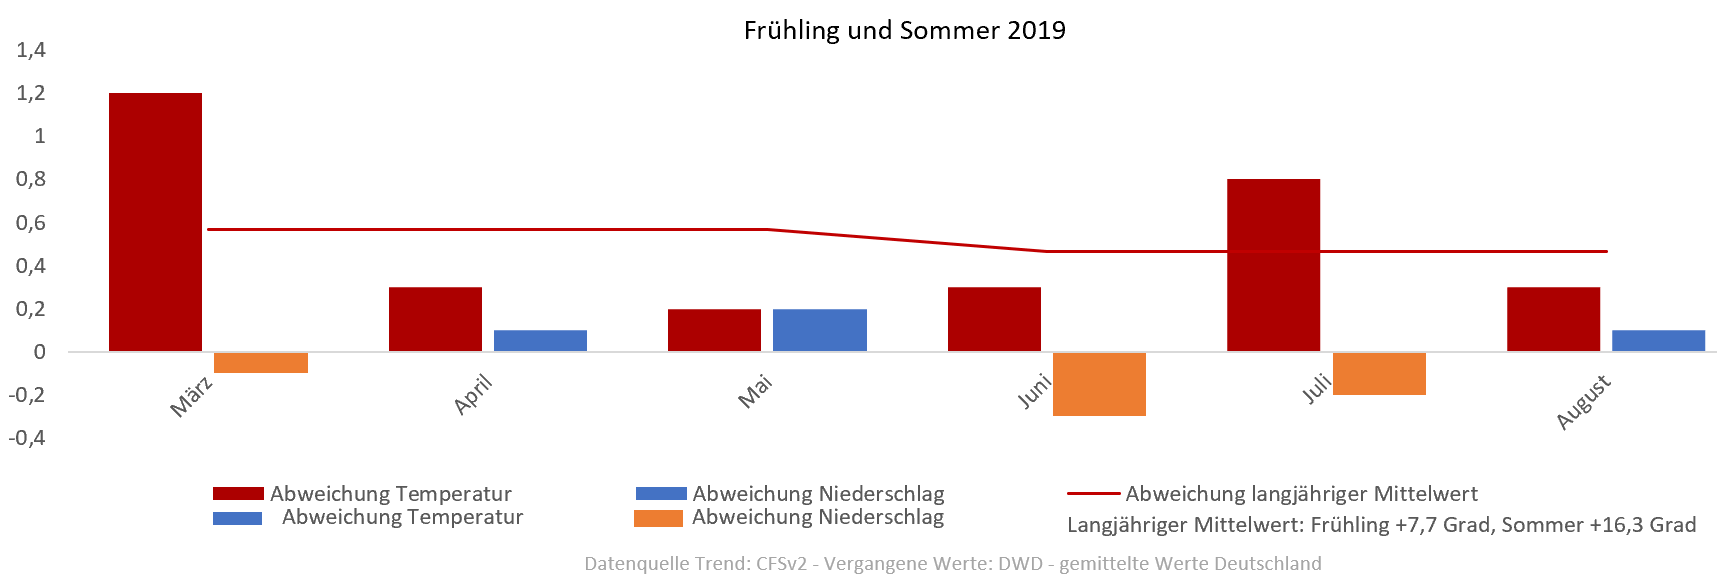 Diagramm der Temperaturentwicklung Frühling und Sommer 2019 vom 19.02.2019